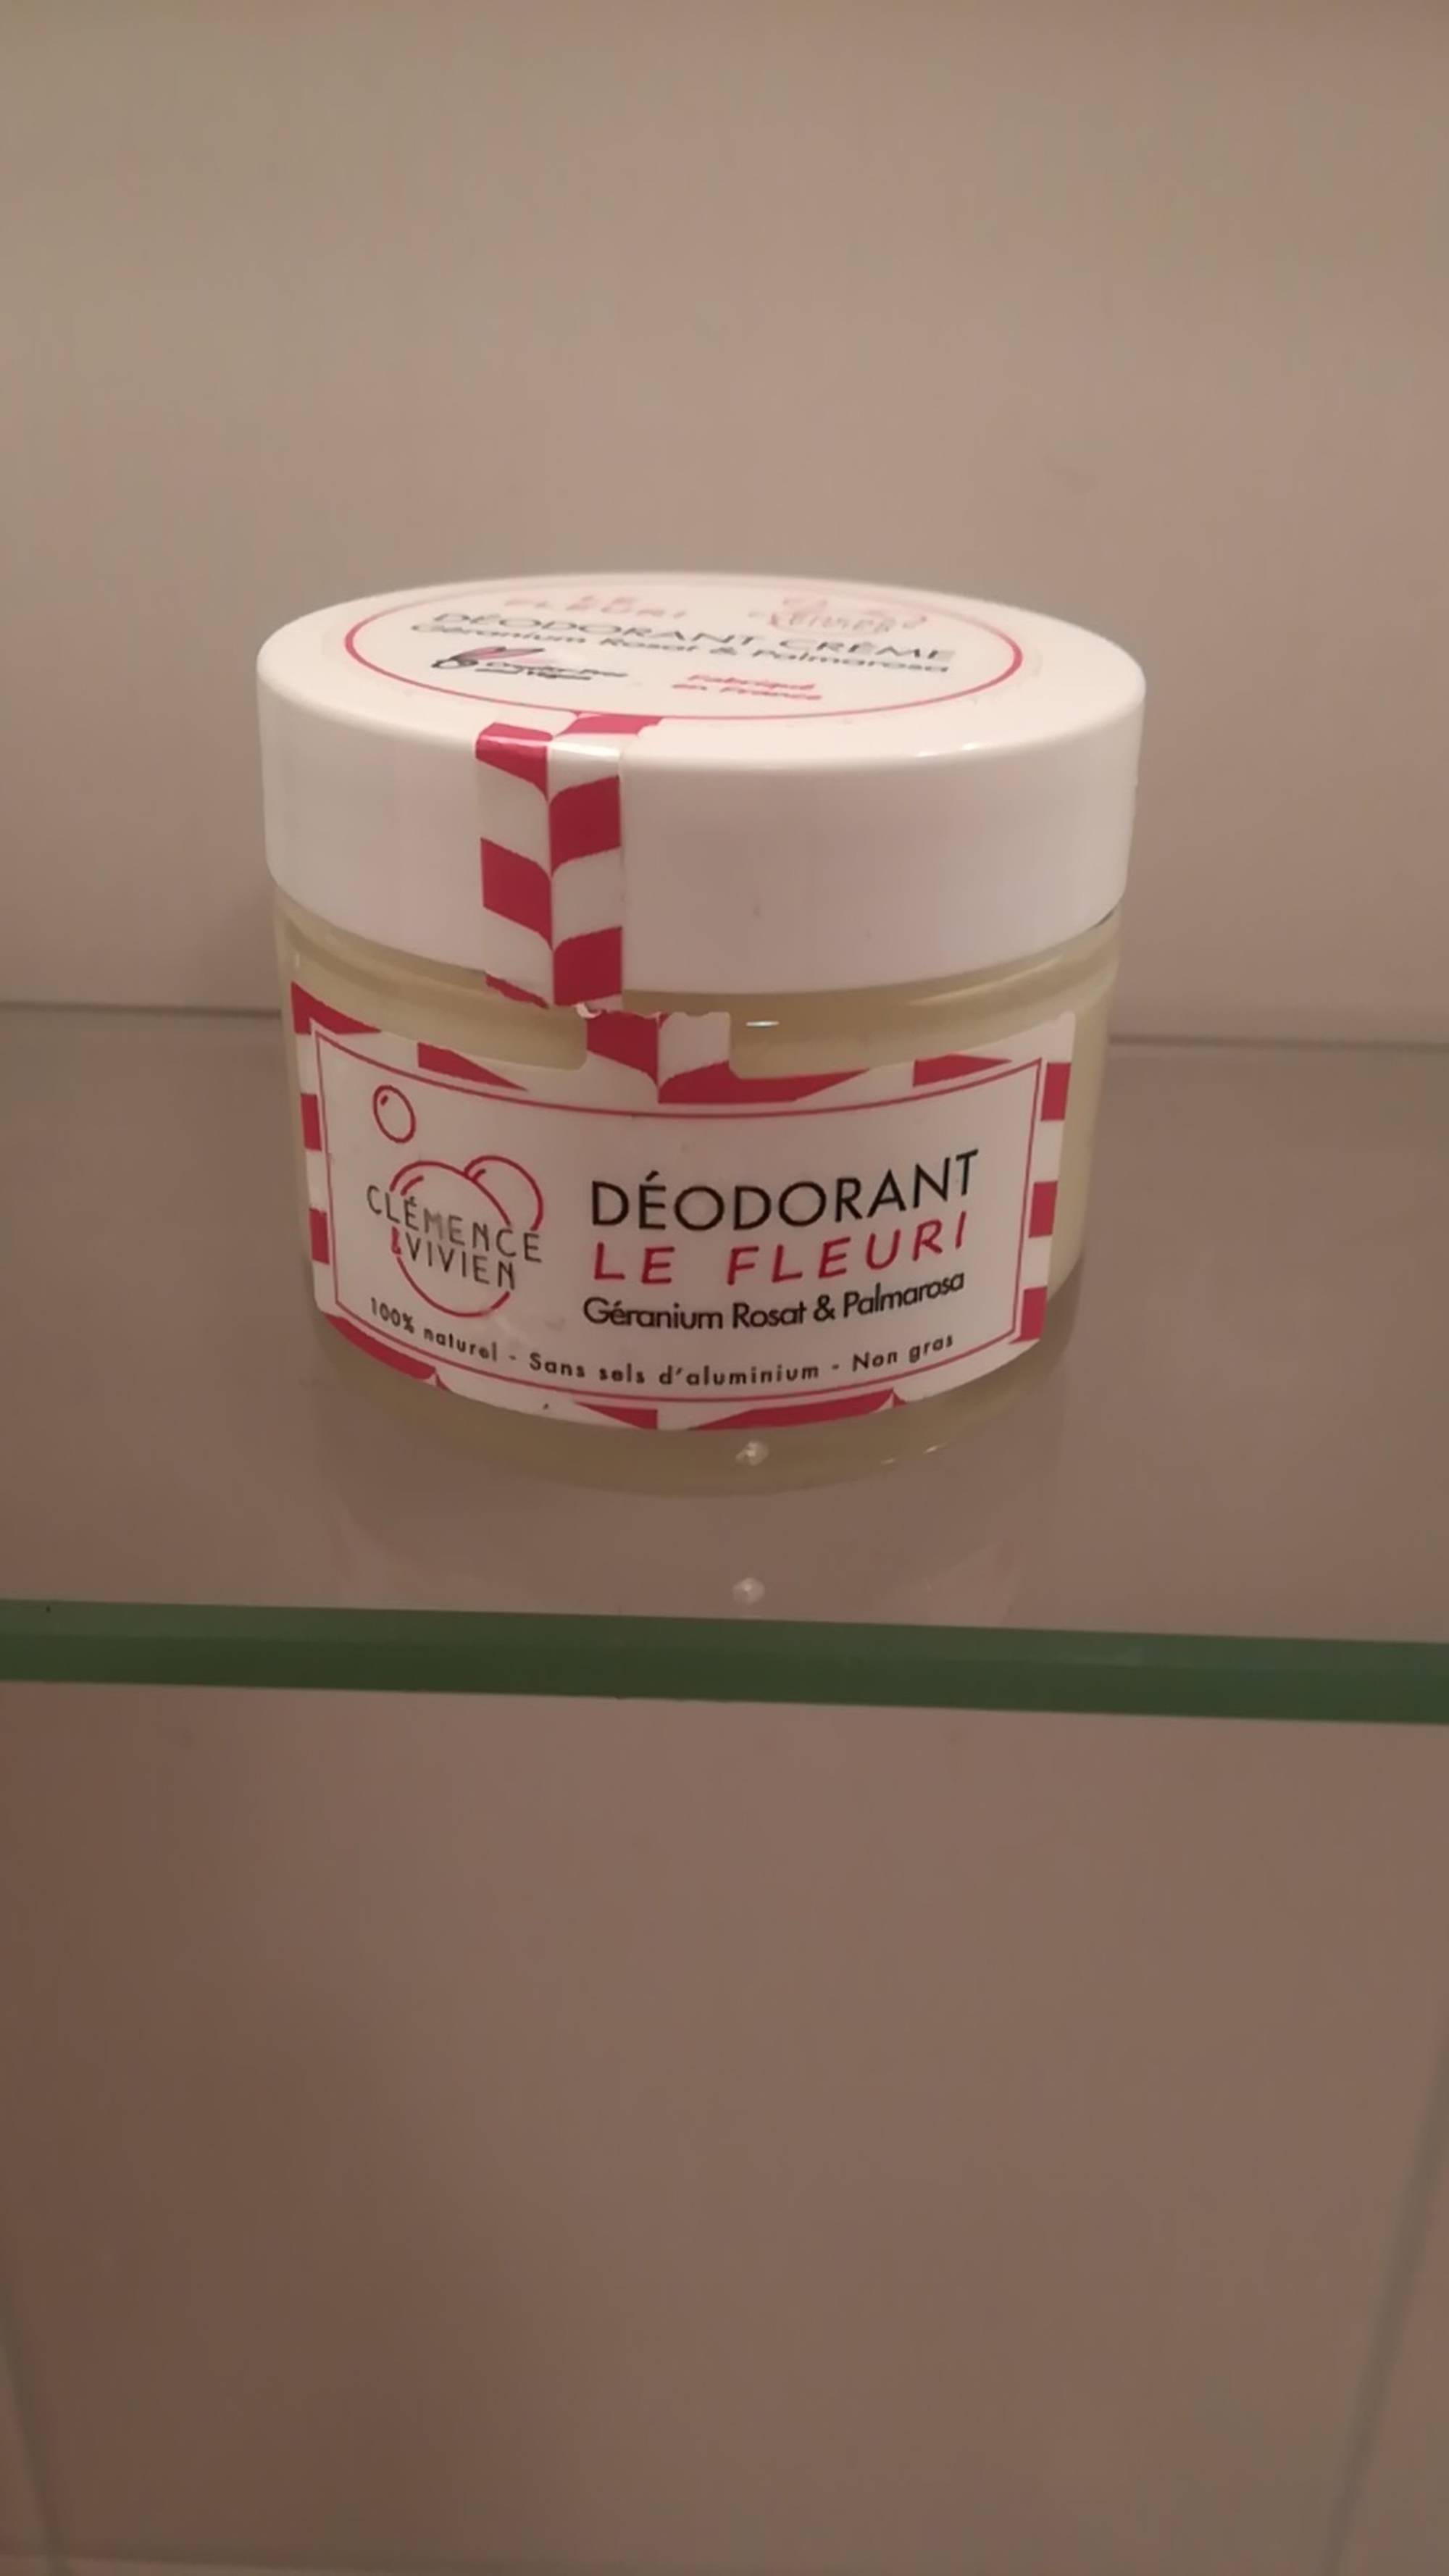 CLÉMENCE & VIVIEN - Le fleuri - Déodorant crème géranium rosat & palmarosa